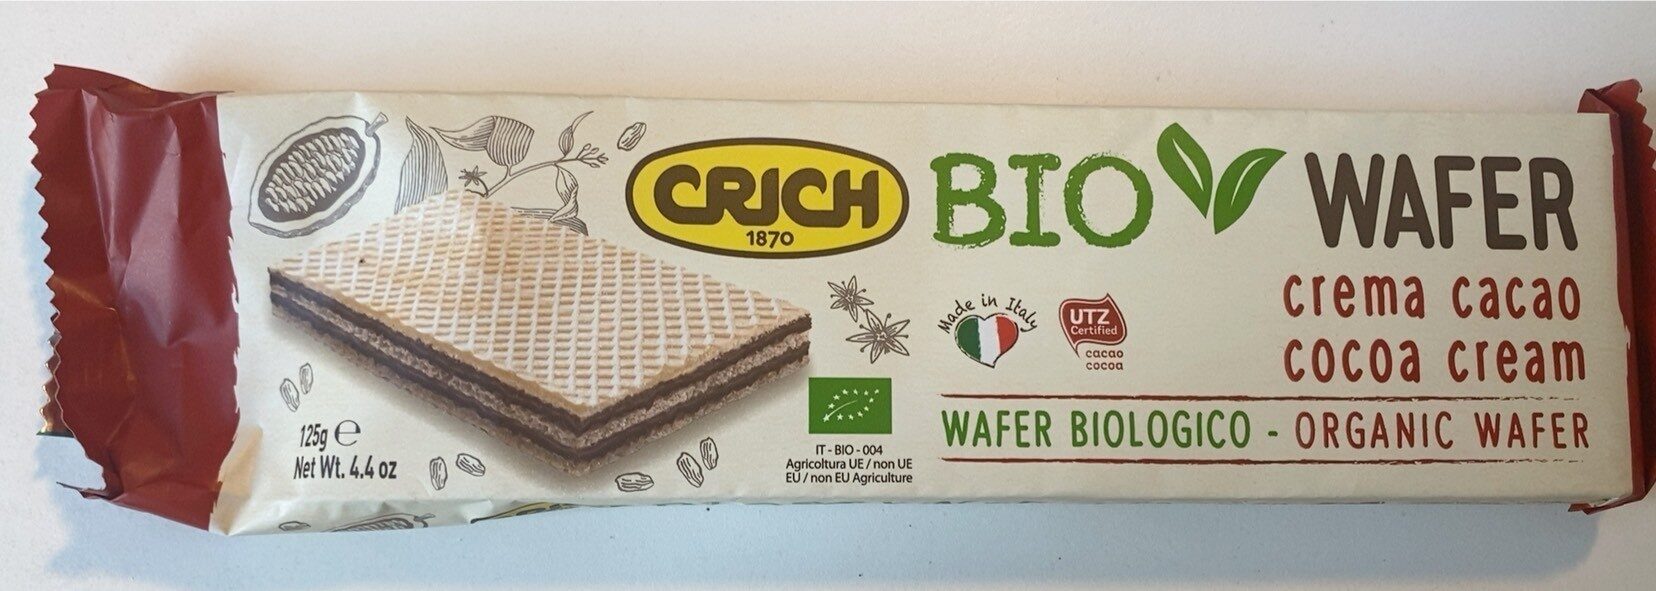 Bio wafer crema cacao - Prodotto